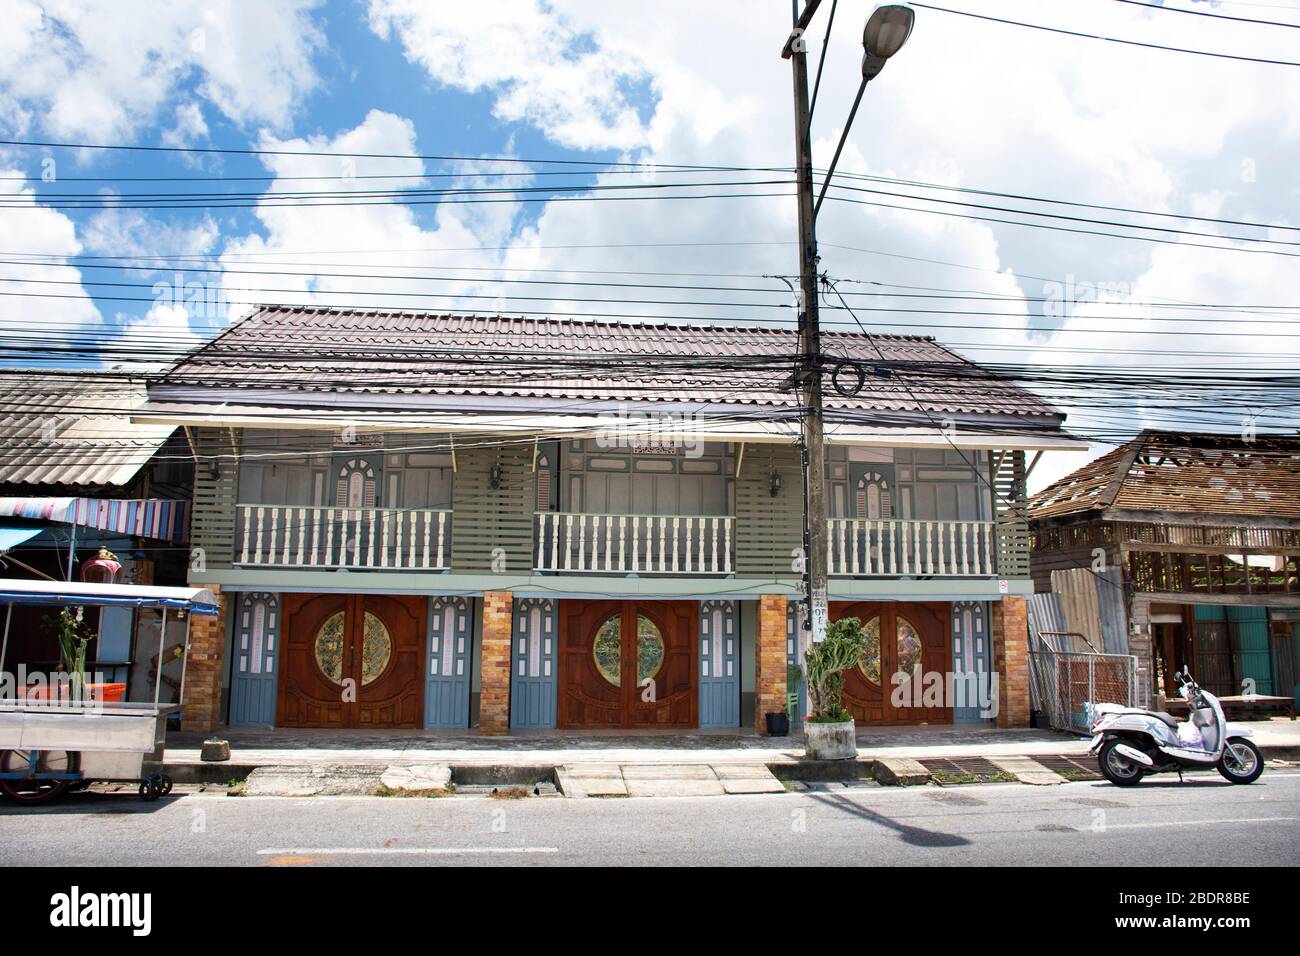 Maison en bois locale classique dans la rue à la Mosquée de Kue se ou Masjid Kerisek dans le quartier de Tanyong Luloon à Pattani, Thaïlande Banque D'Images